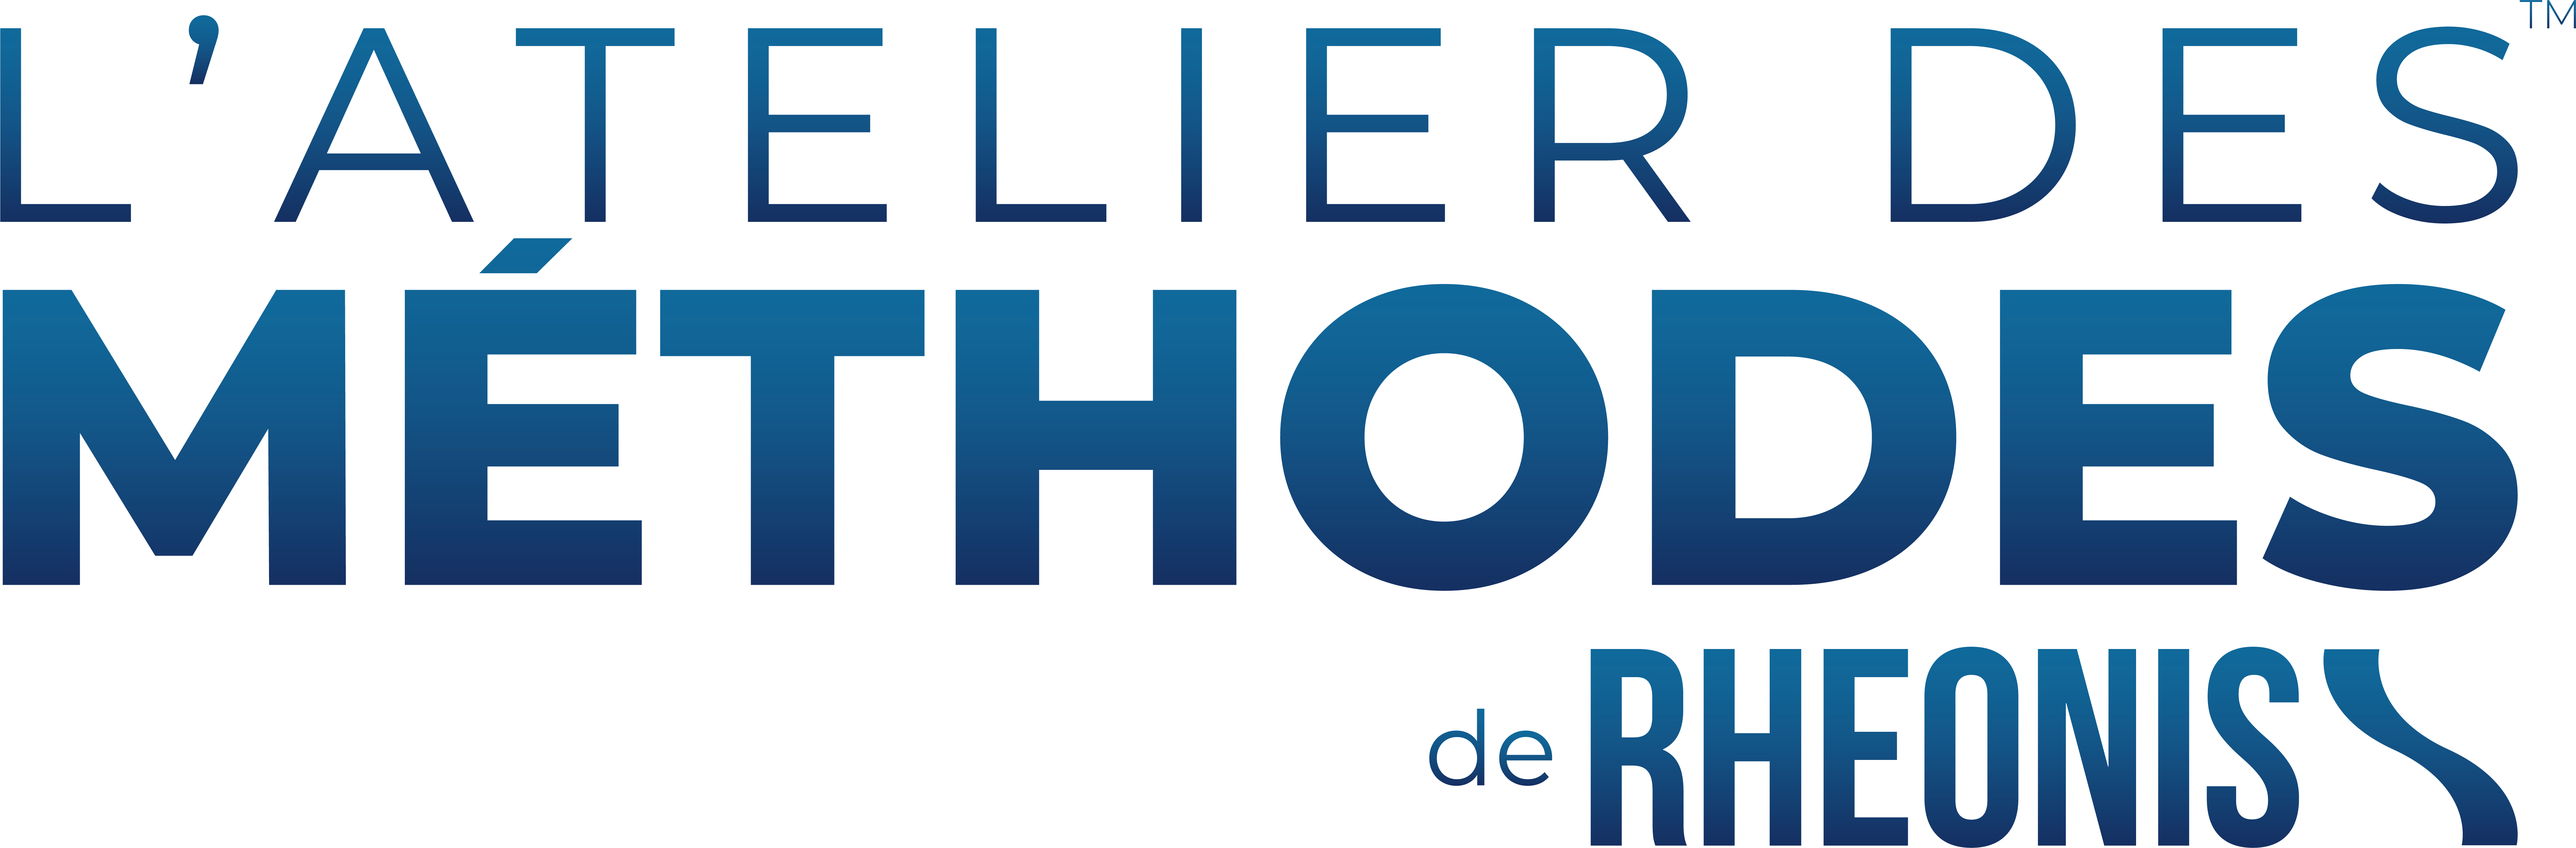 logo-workshop-of-methods-Rheonis